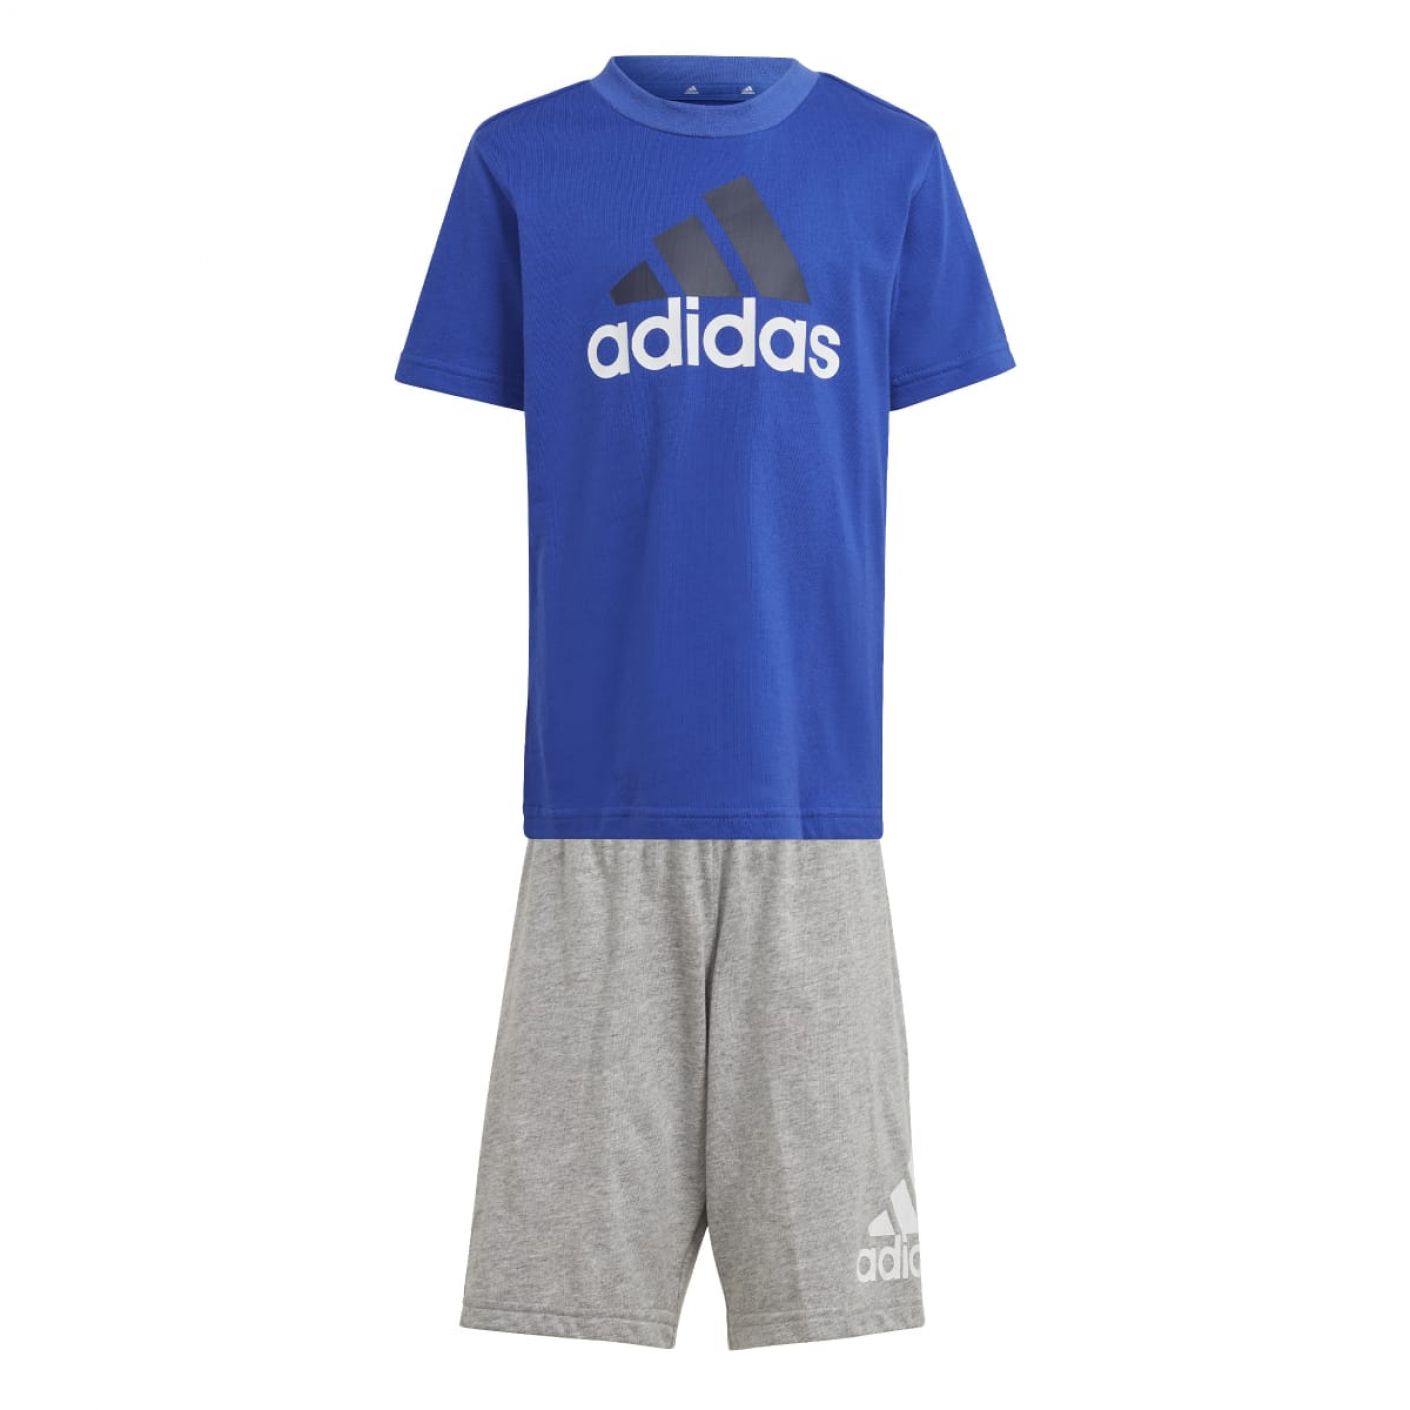 Adidas Completo Blue/Grey da Bambino